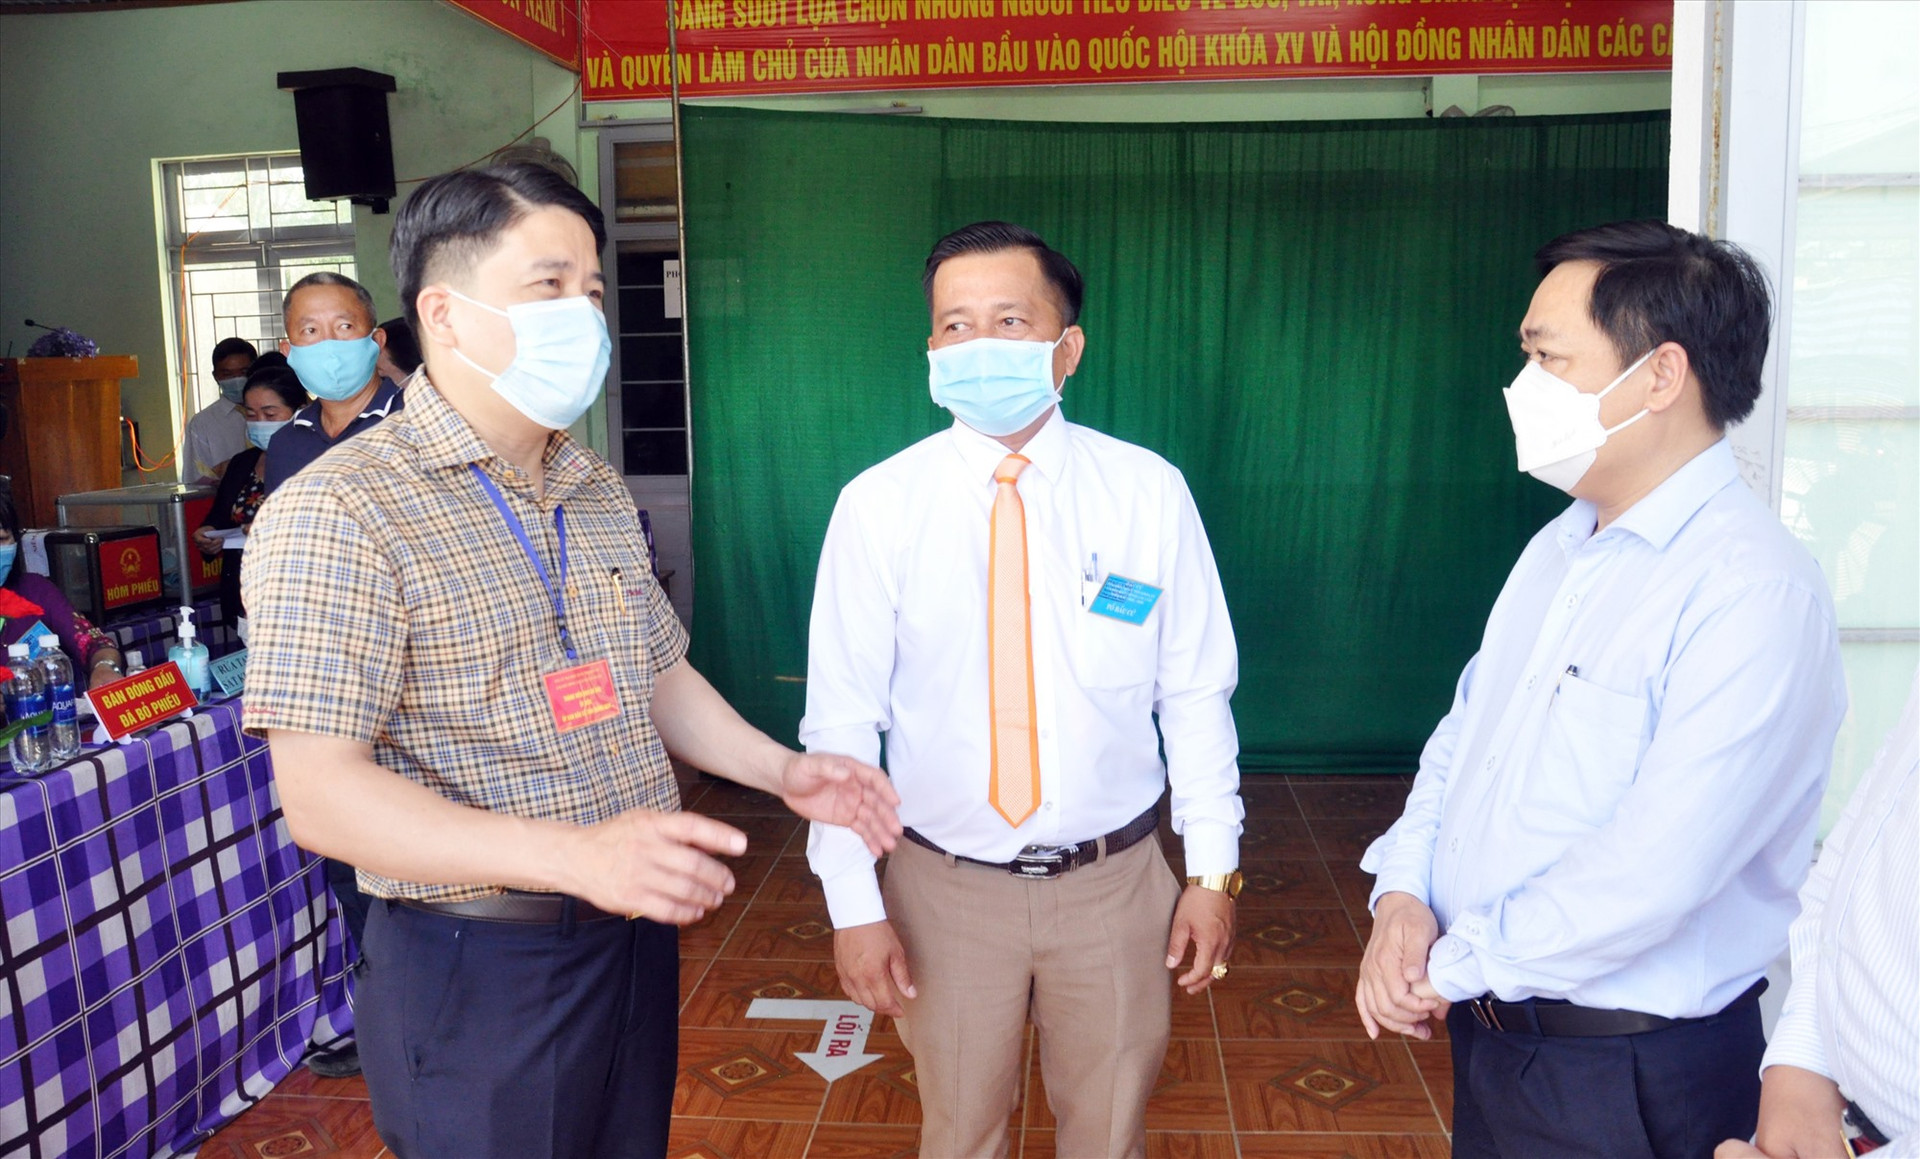 Phó Chủ tịch UBND tỉnh Trần Văn Tân trao đổi về công tác chuẩn bị bầu cử trên địa bàn Tam Kỳ